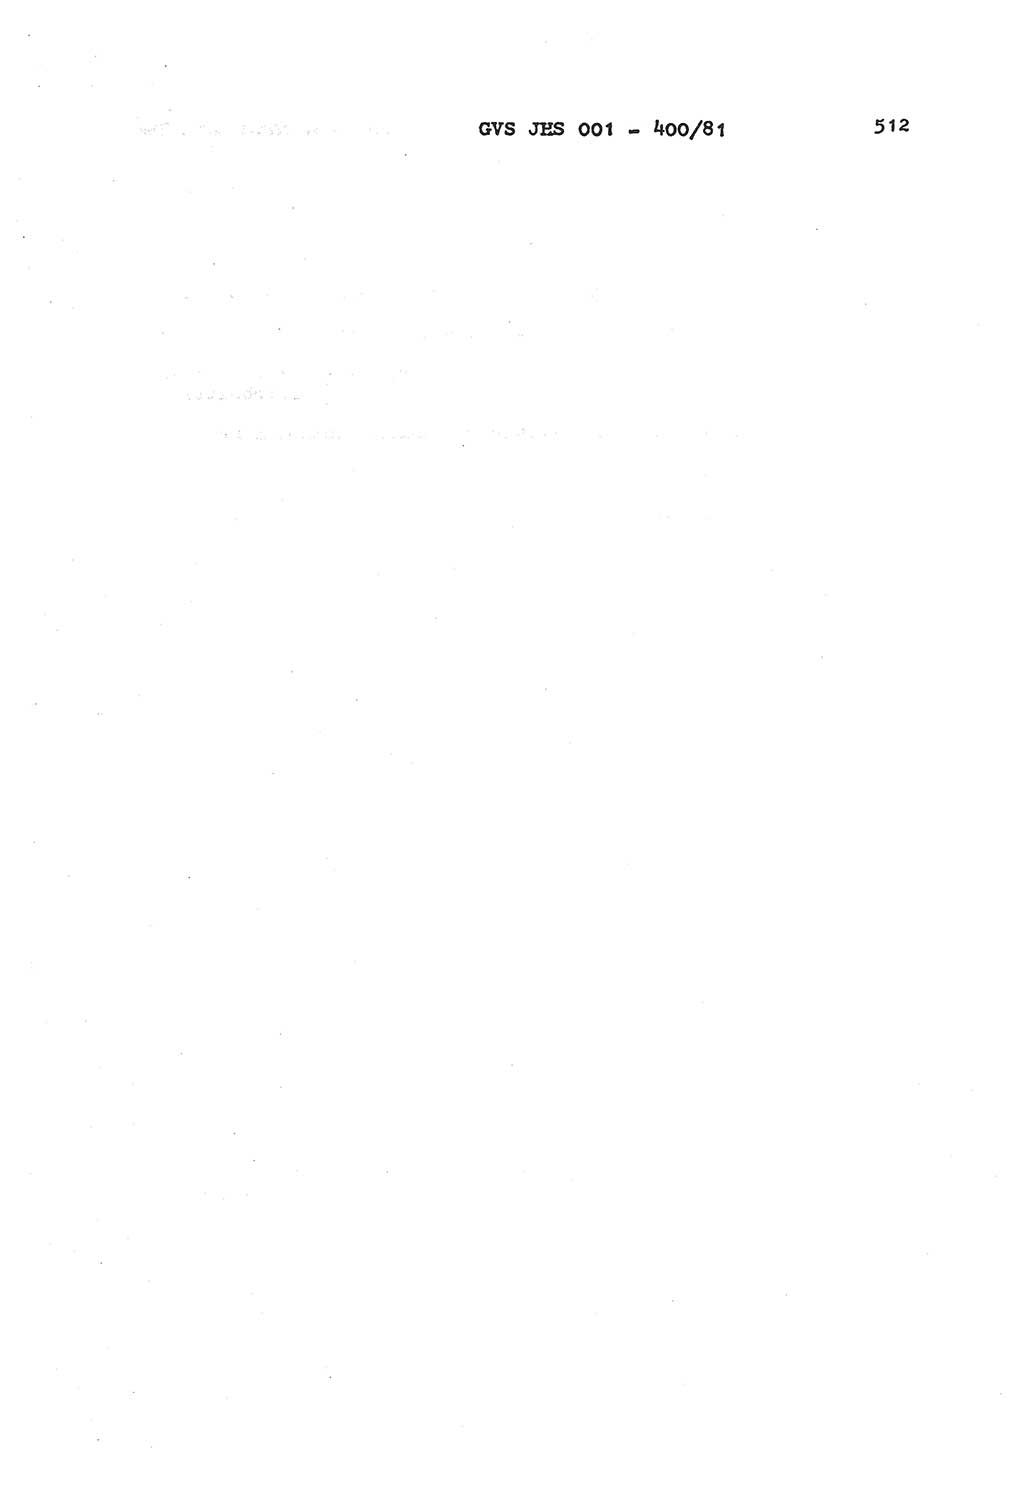 Wörterbuch der politisch-operativen Arbeit, Ministerium für Staatssicherheit (MfS) [Deutsche Demokratische Republik (DDR)], Juristische Hochschule (JHS), Geheime Verschlußsache (GVS) o001-400/81, Potsdam 1985, Blatt 512 (Wb. pol.-op. Arb. MfS DDR JHS GVS o001-400/81 1985, Bl. 512)